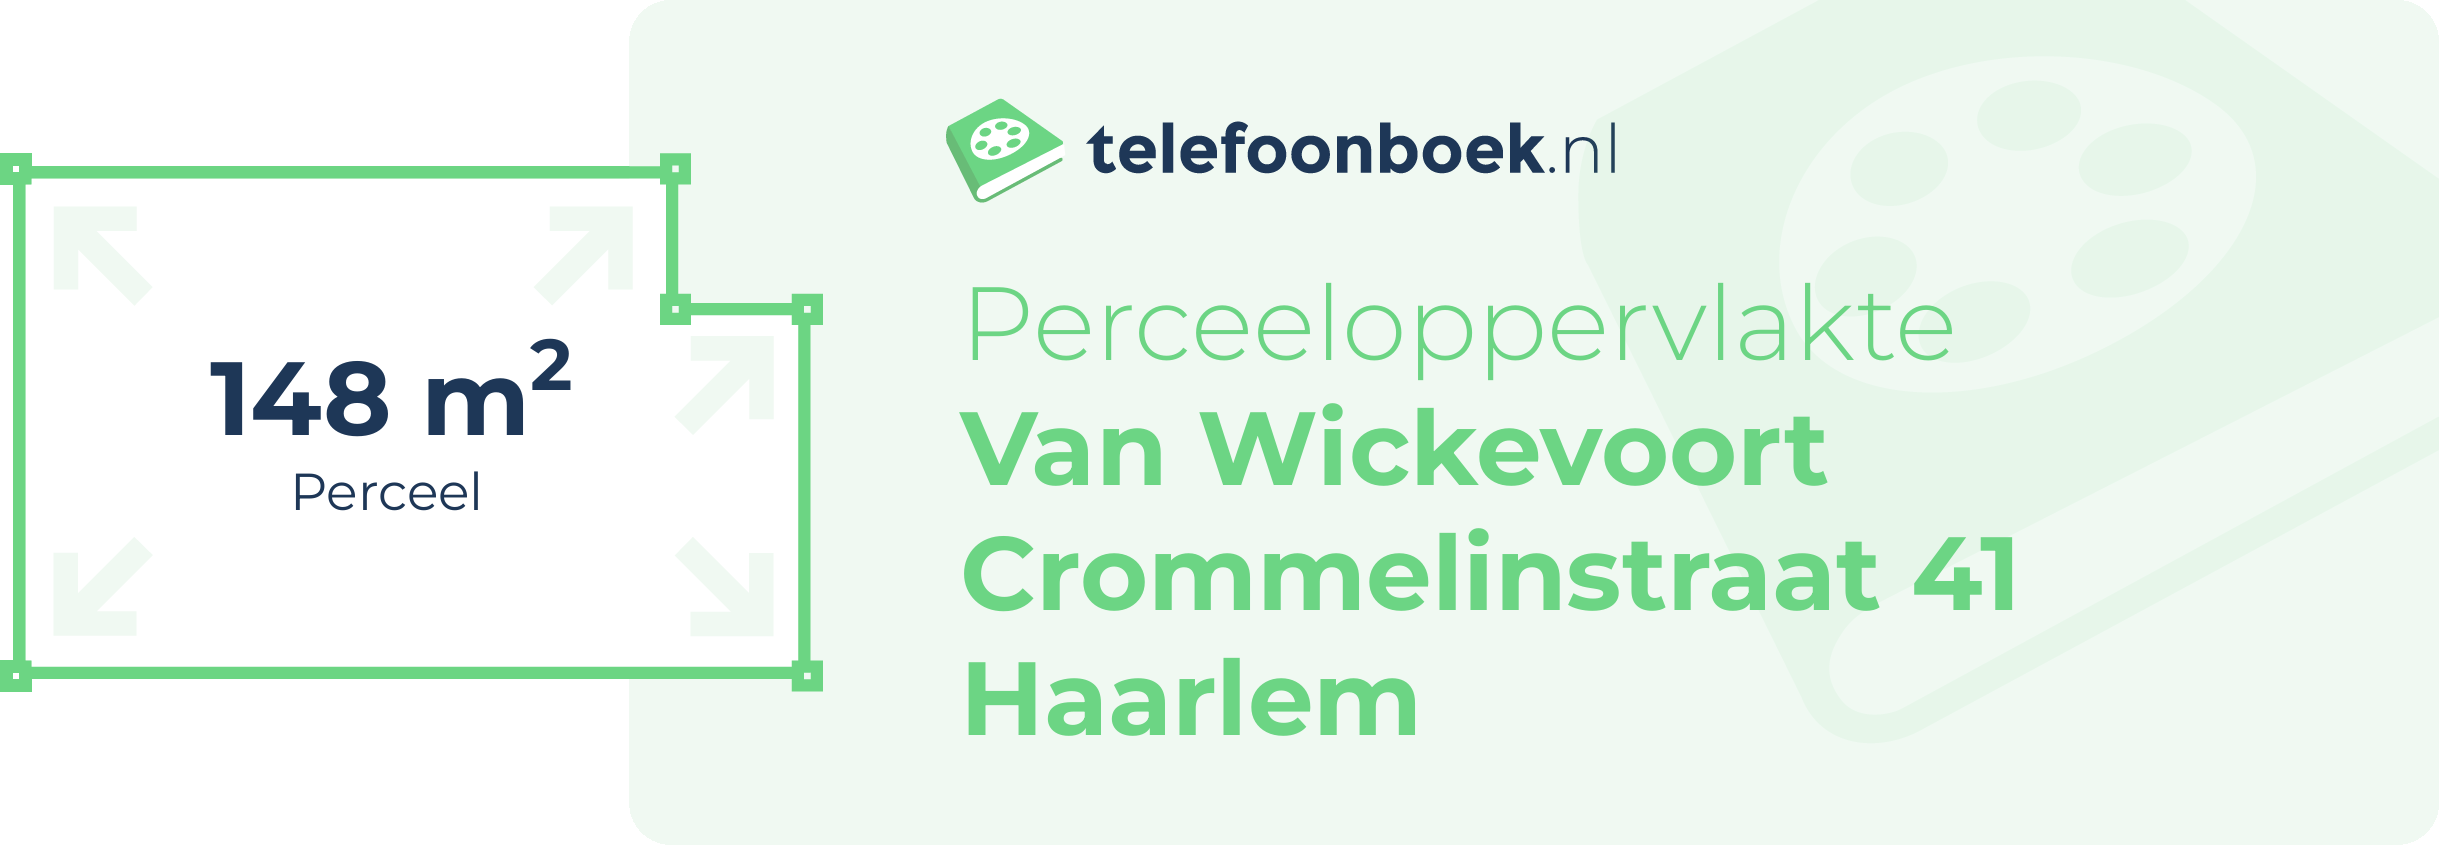 Perceeloppervlakte Van Wickevoort Crommelinstraat 41 Haarlem